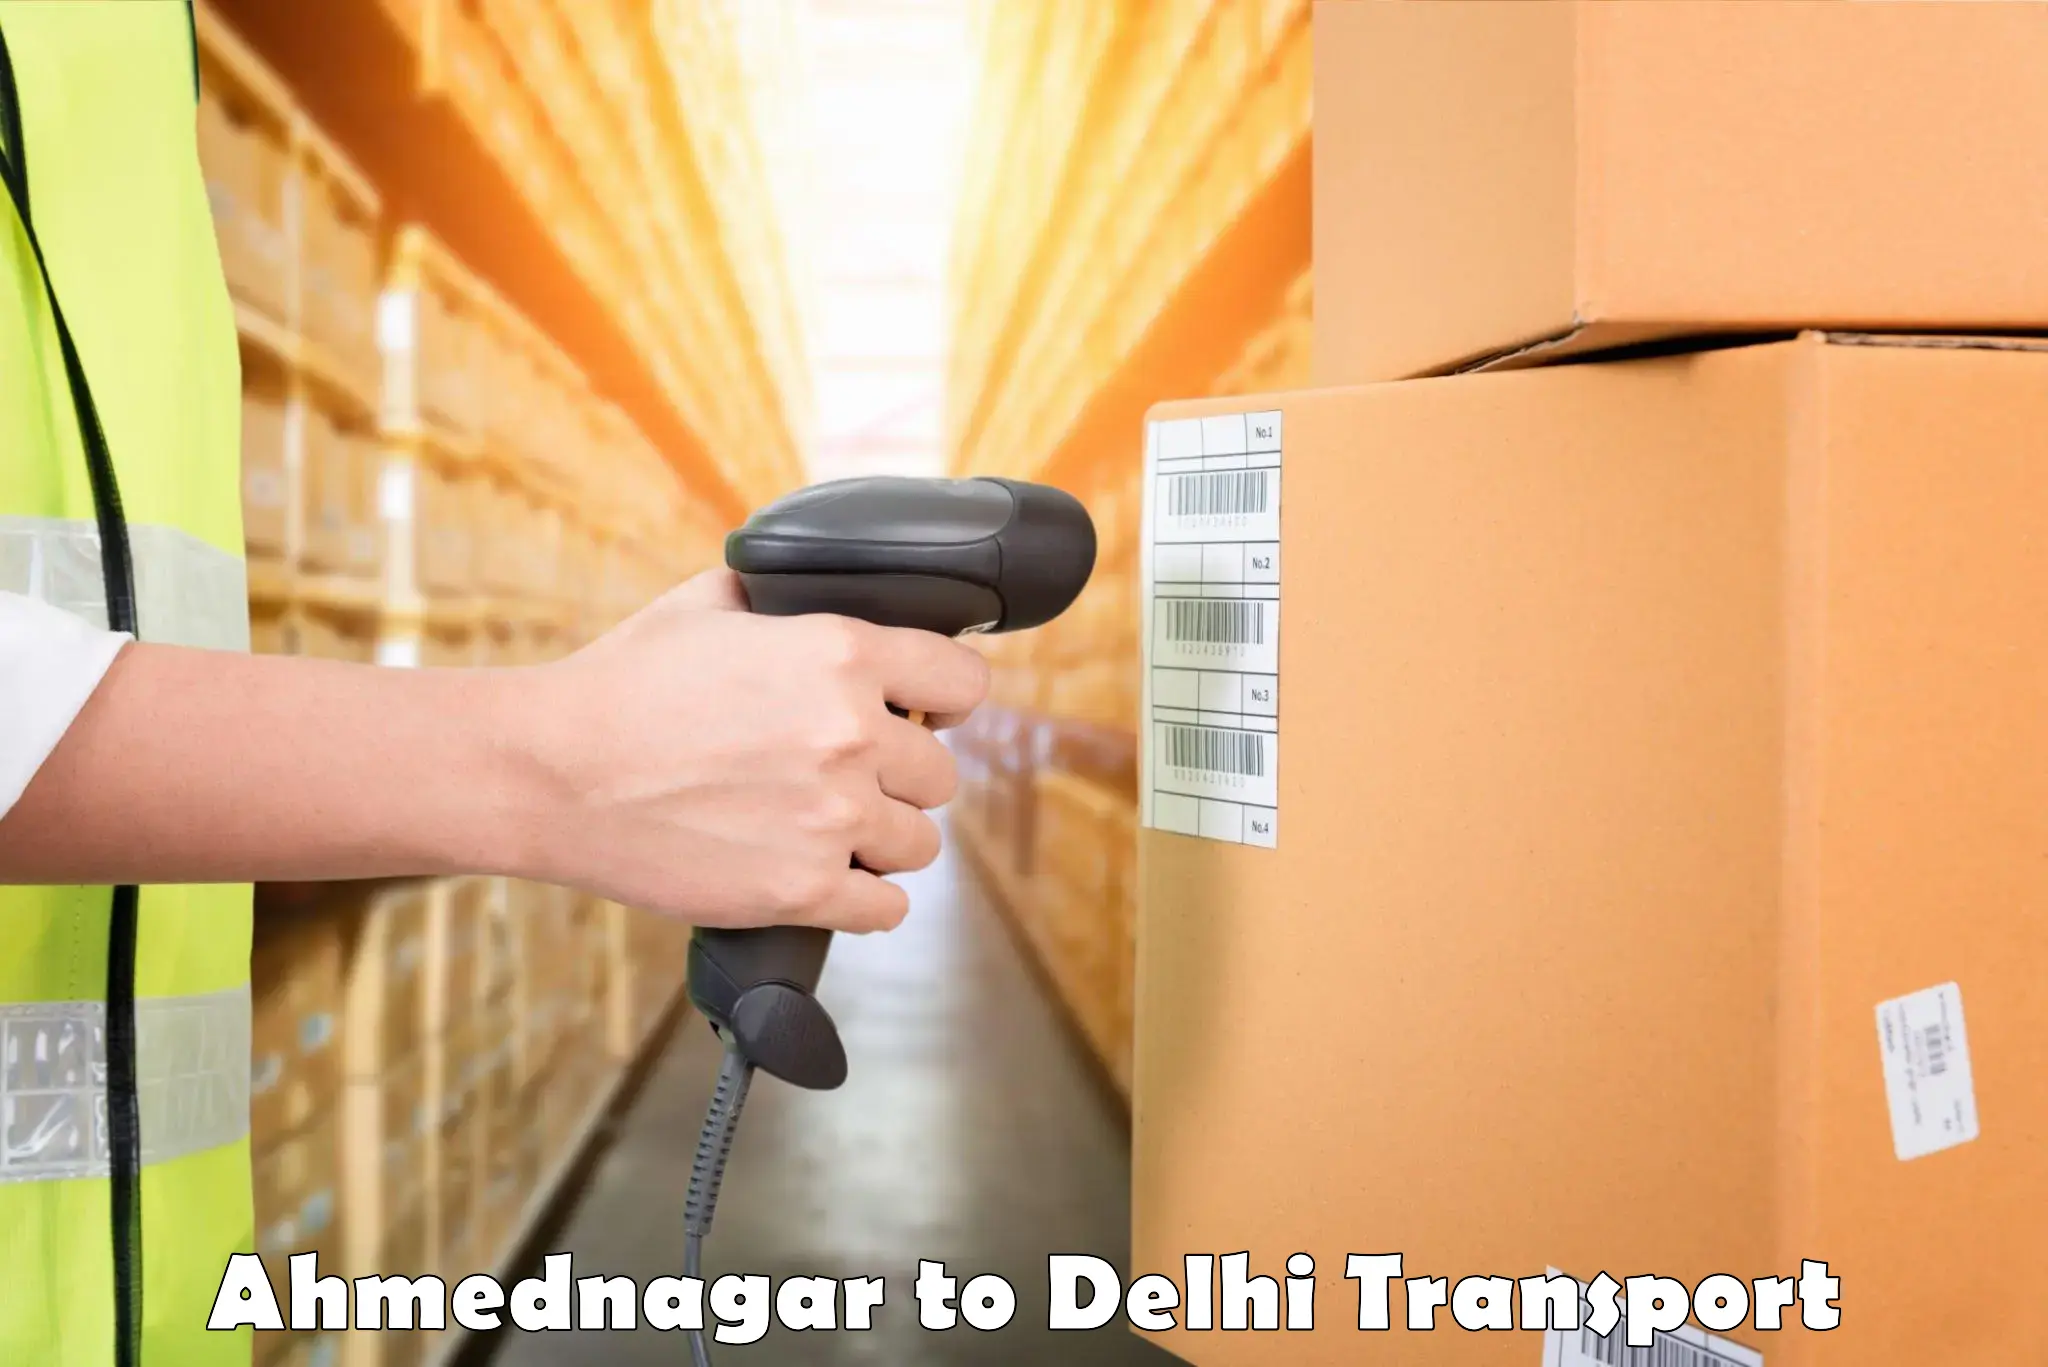 Daily parcel service transport Ahmednagar to Jawaharlal Nehru University New Delhi